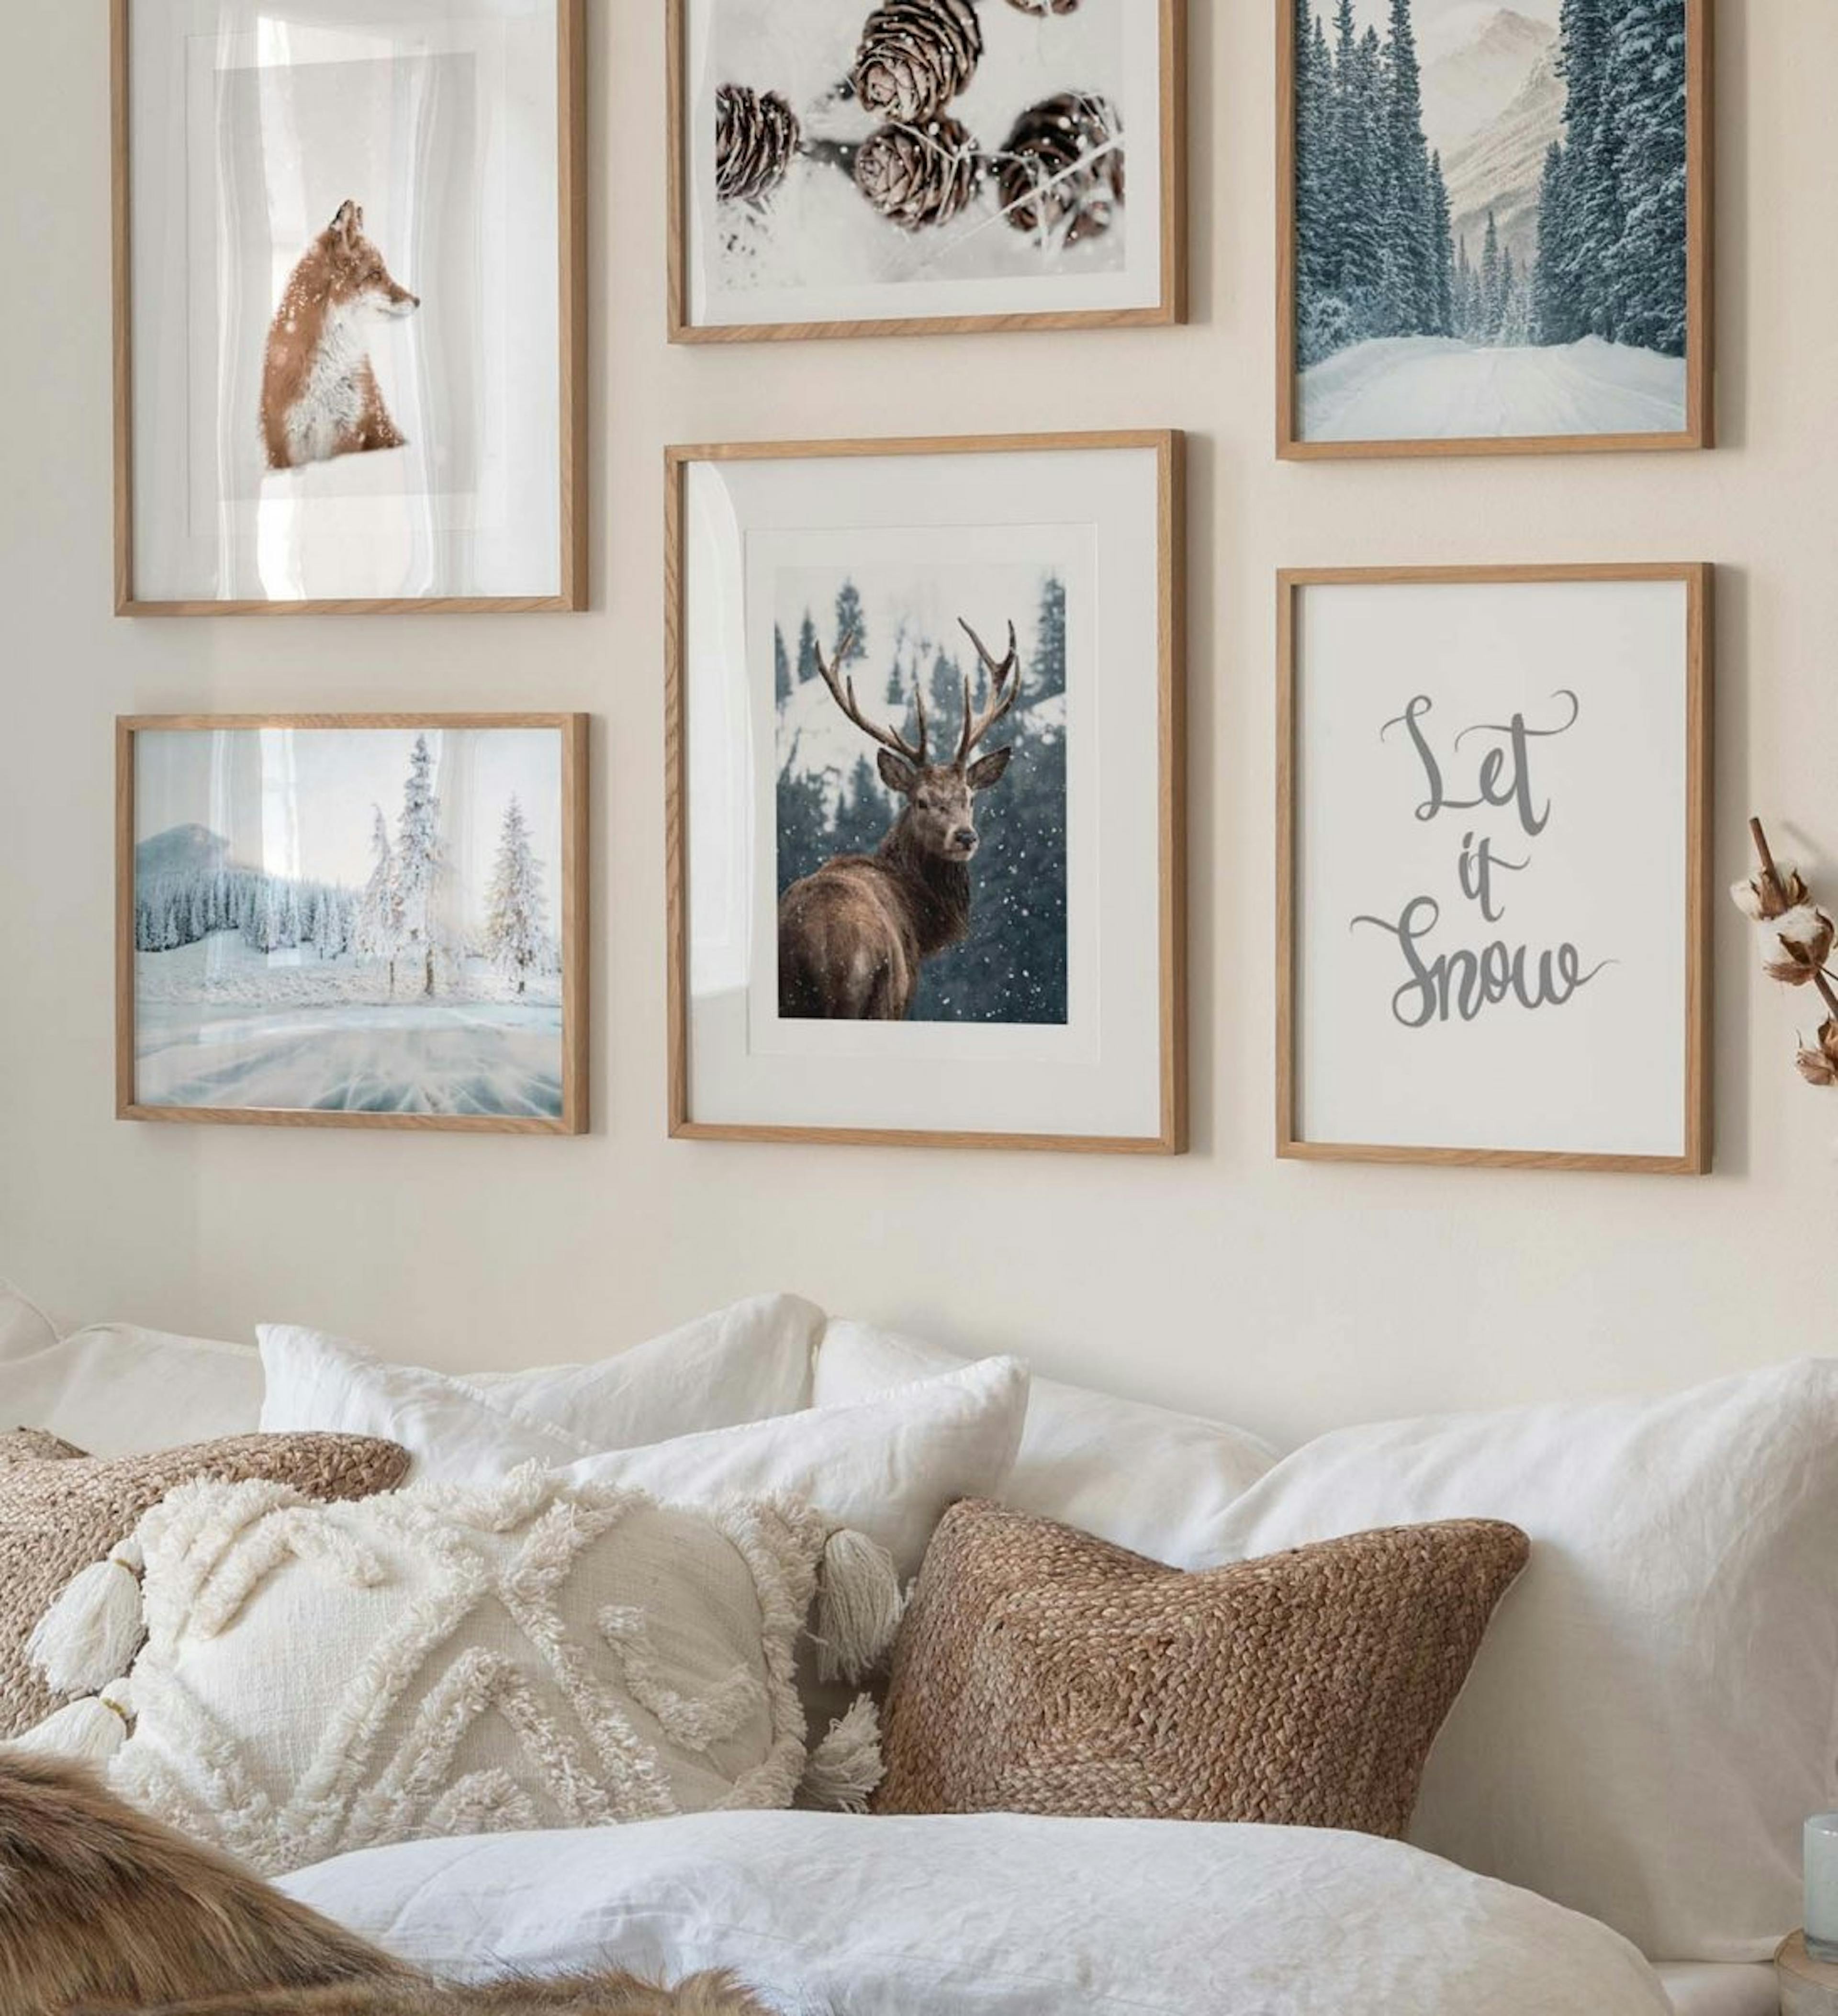 Galeriewand mit winterlichen Postern von Zapfen, einem Fuchs und einem Rothirsch, kombiniert mit winterlichen Naturfotos und Zit